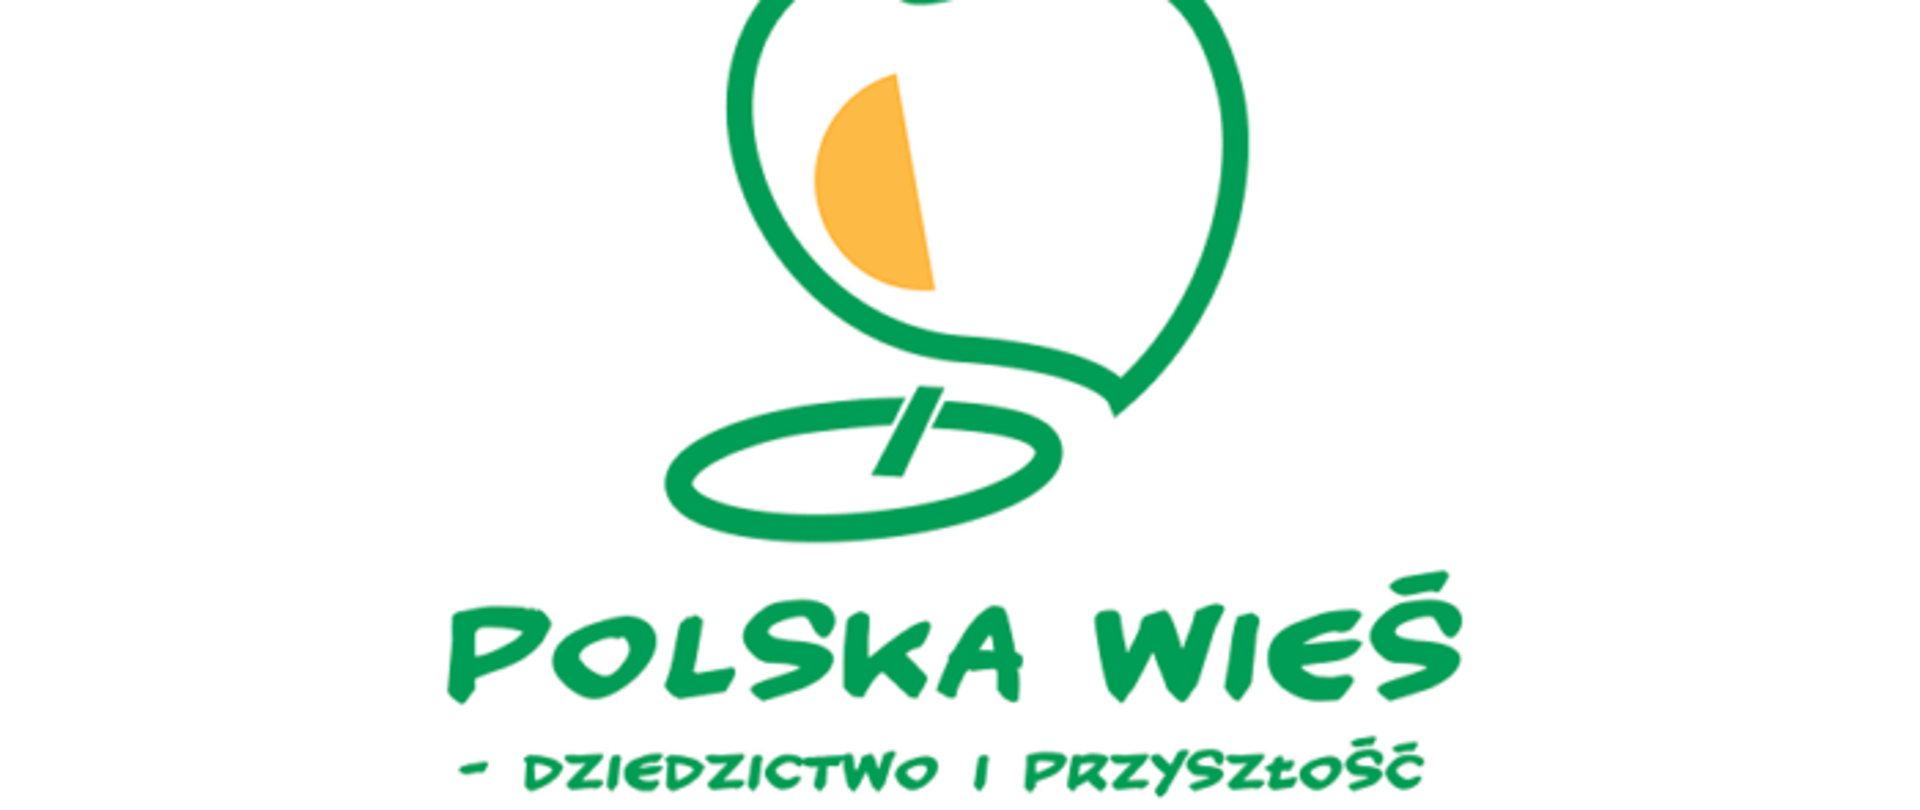 białe tło zielona grafika zarys mapy polski zielone litery polska wieś dziedzictwo i przyszłość 